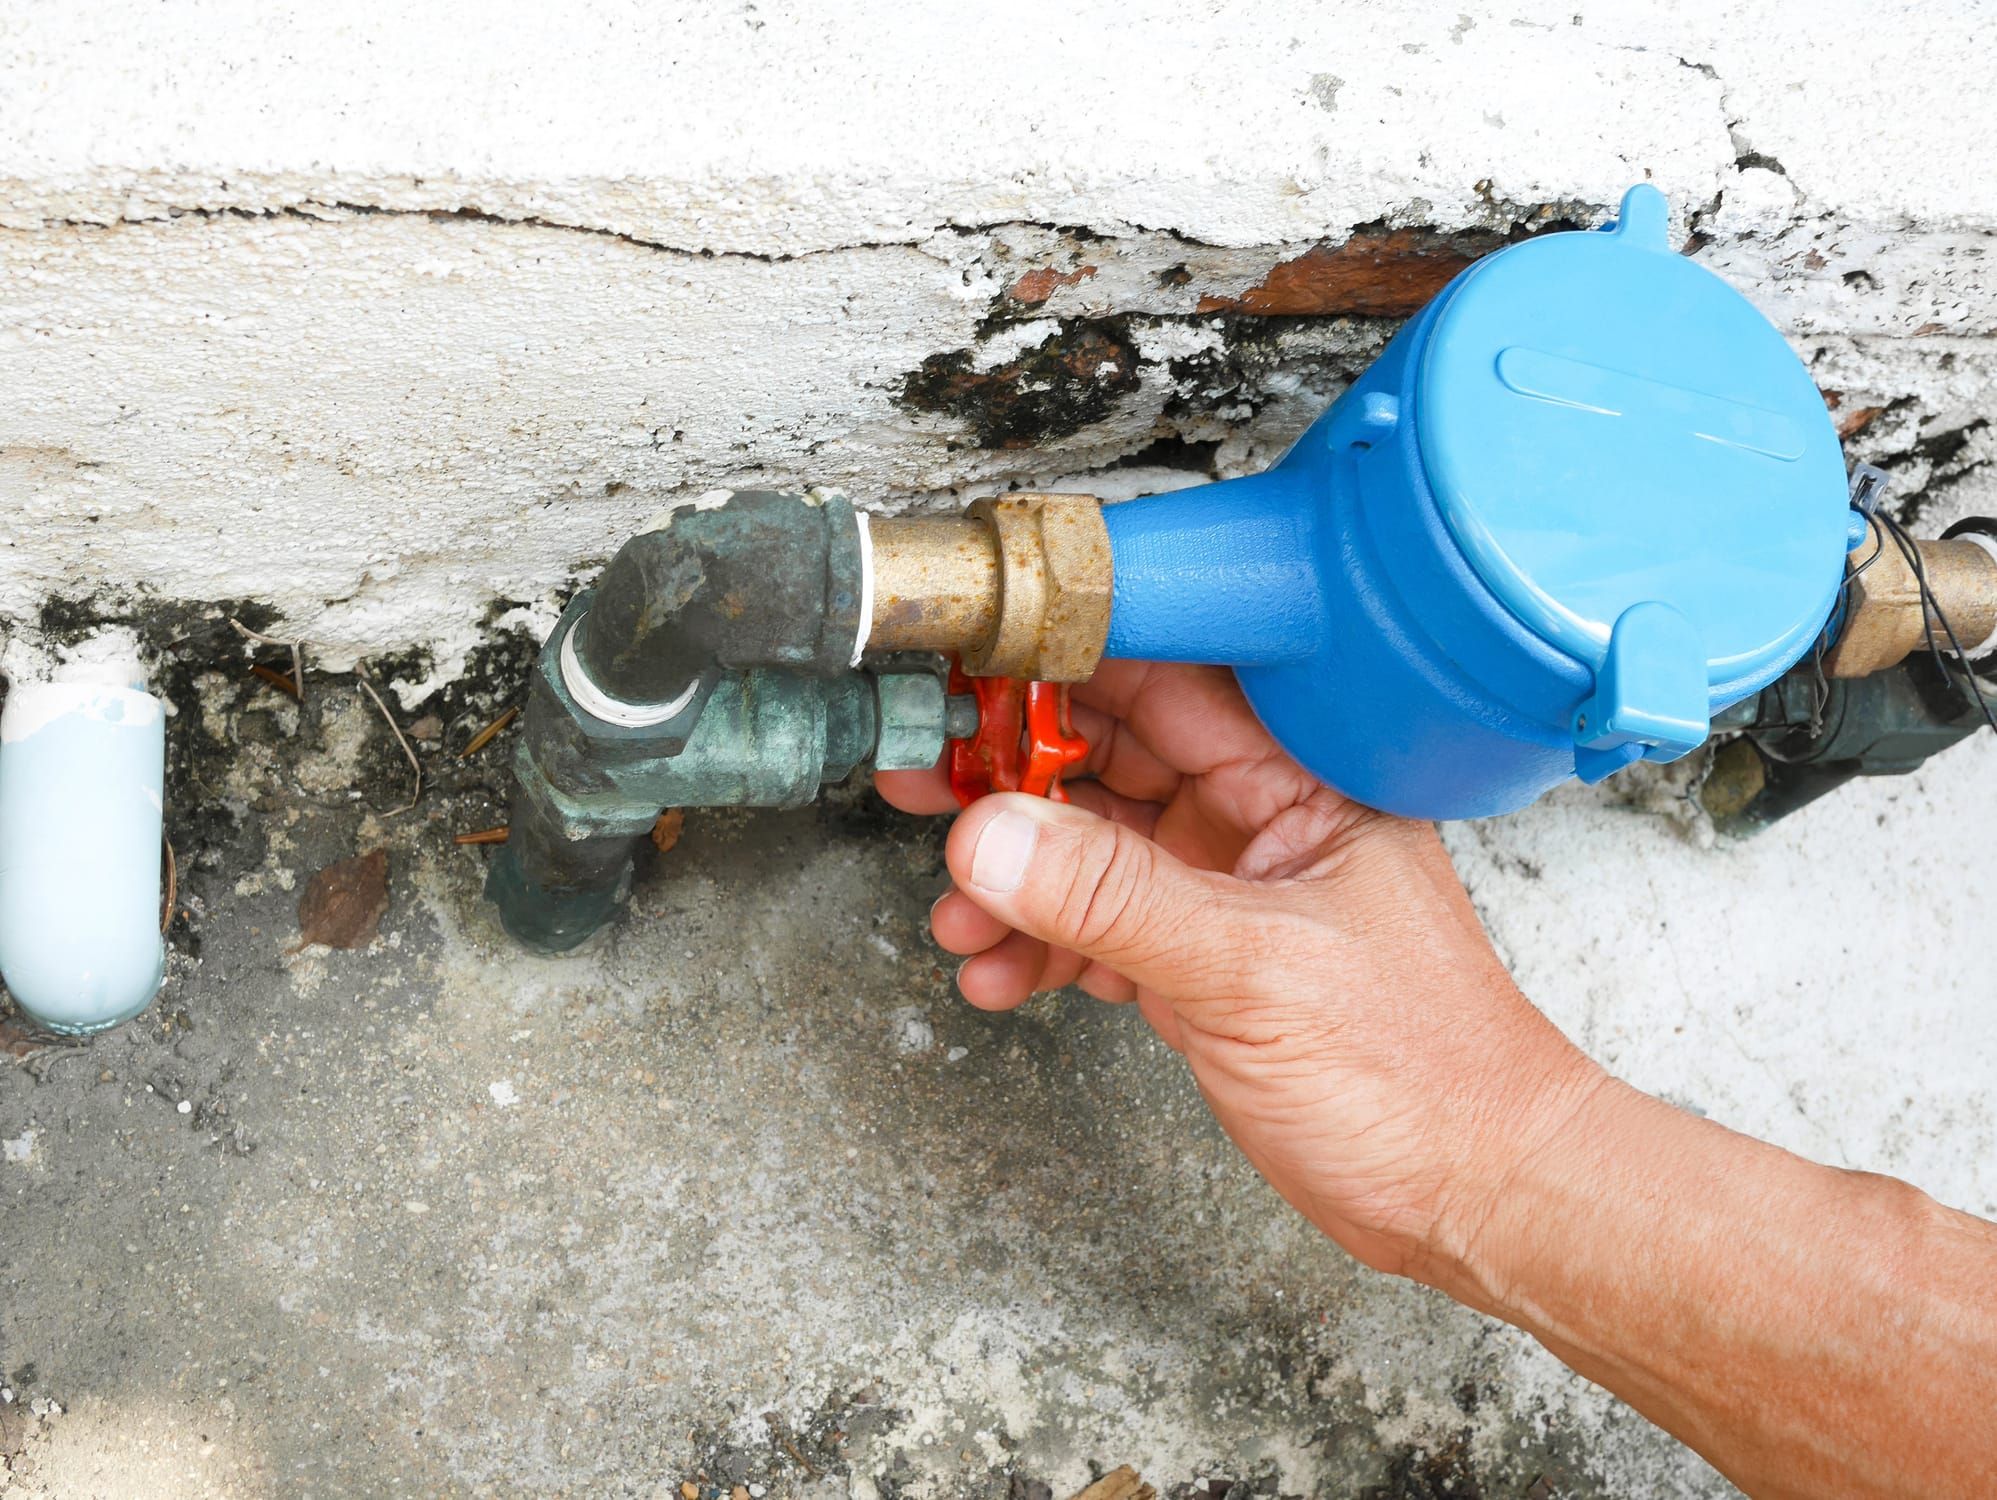 Comment colmater une fuite d'eau sous pression ? –